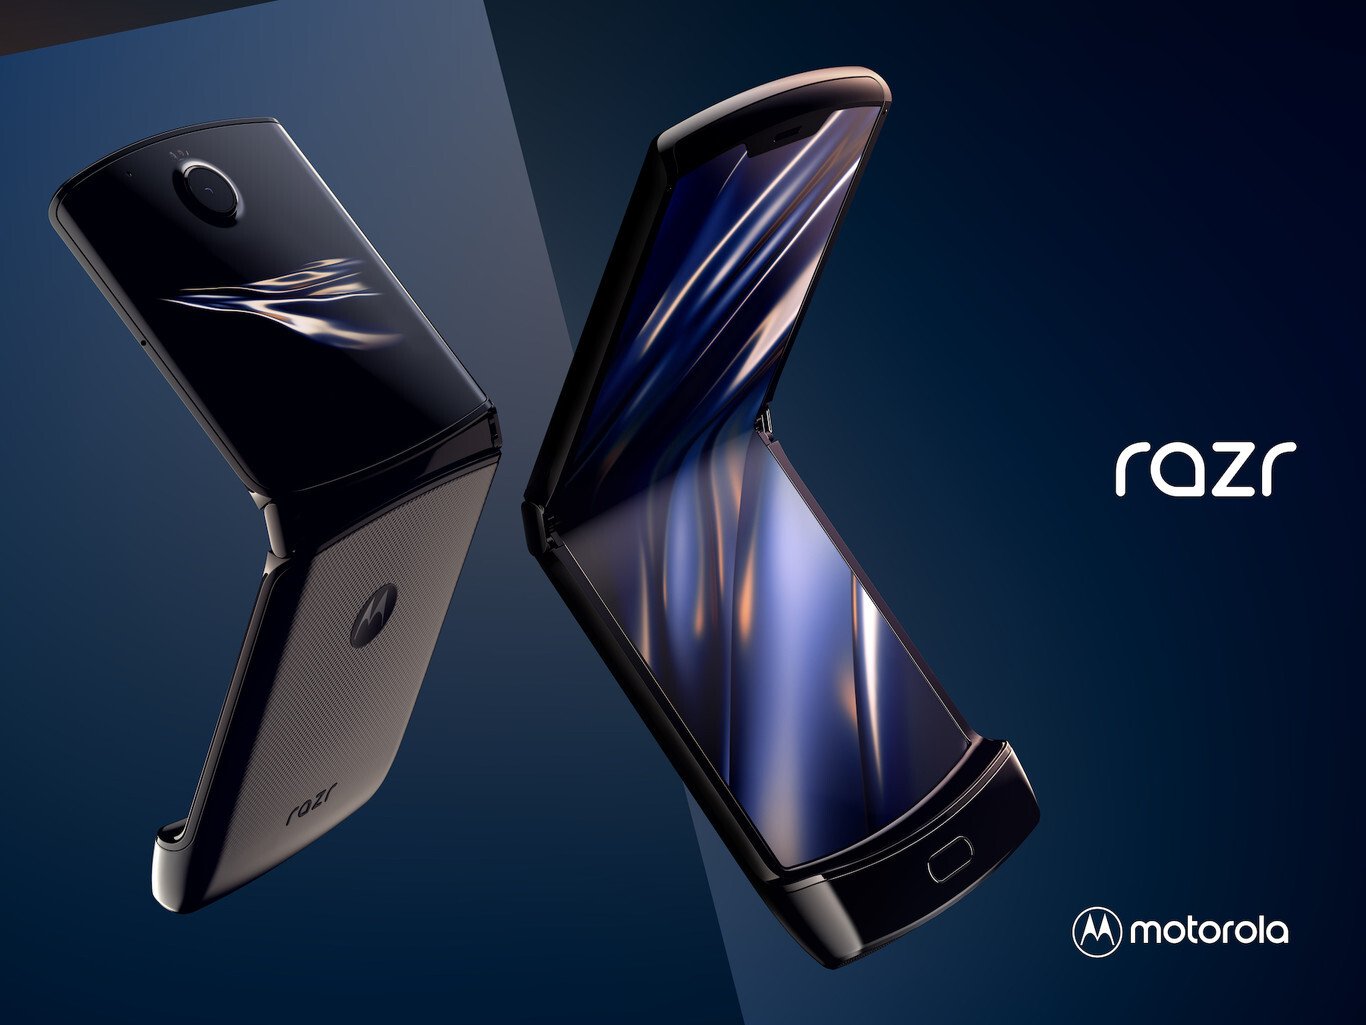 Moto RAZR Z sería bautizado el próximo gama alta de Motorola